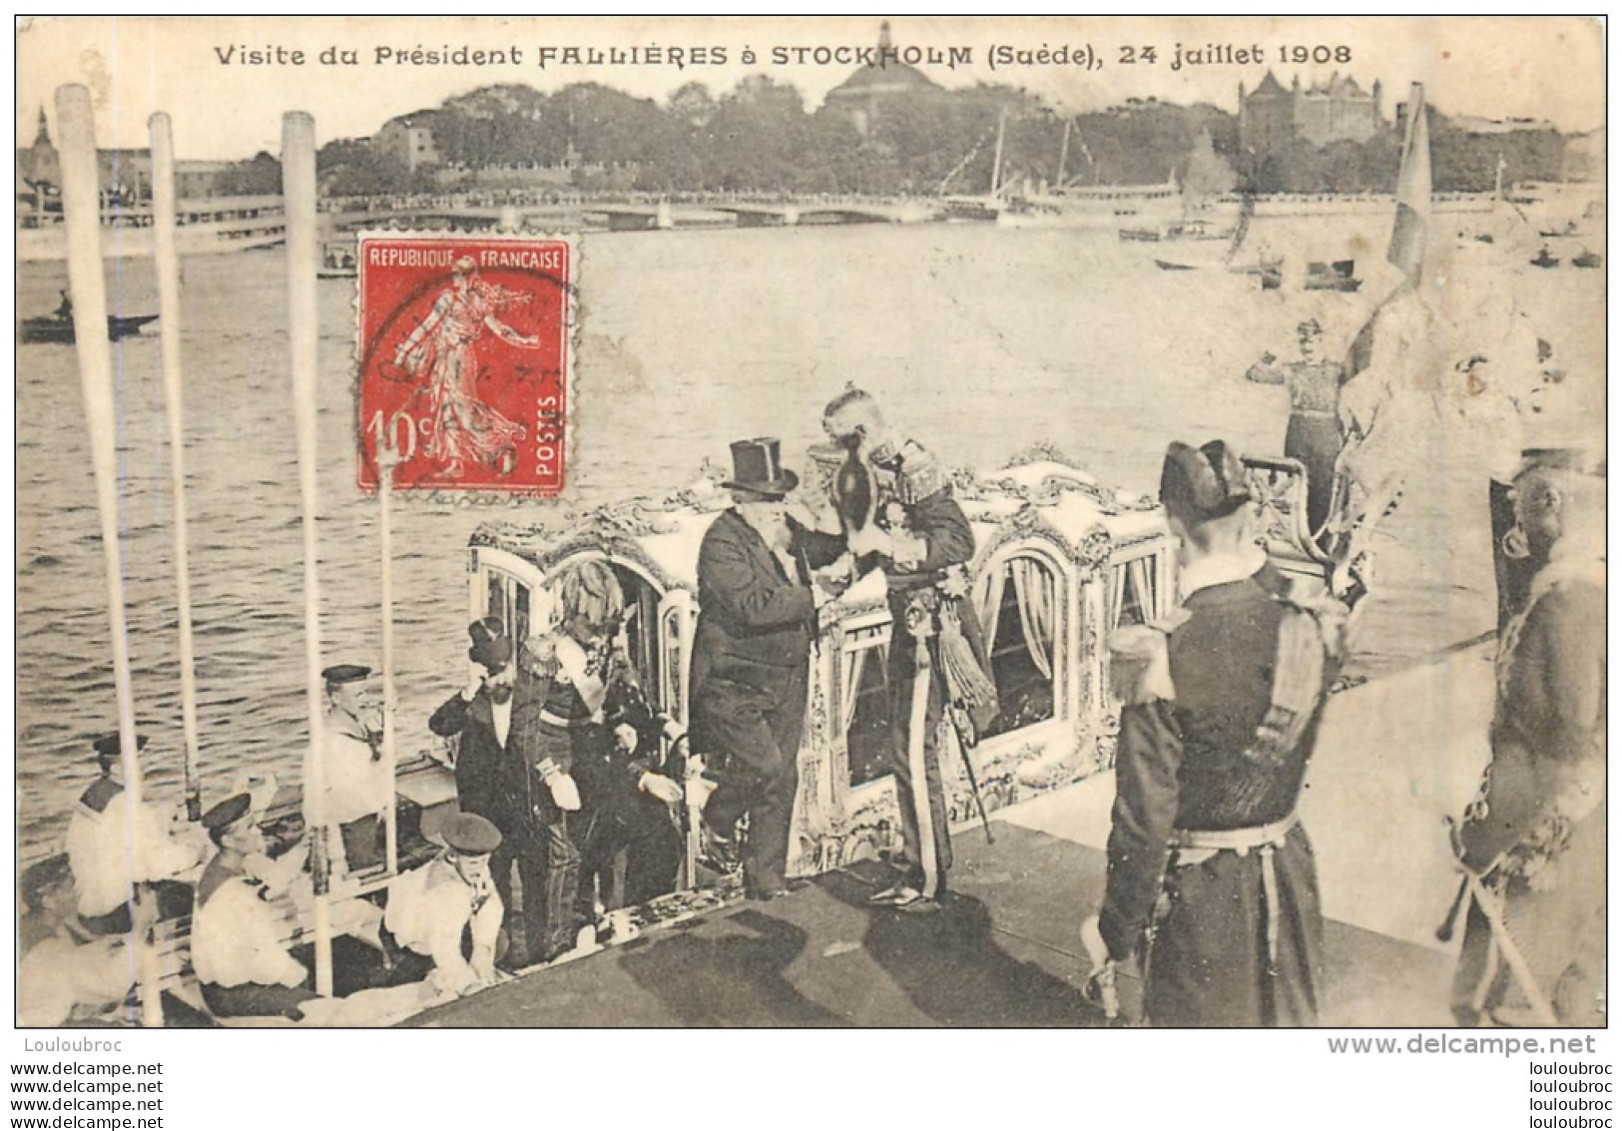 VISITE DU PRESIDENT FALLIERES A STOCKHOLM JUILLET 1908 - Persönlichkeiten